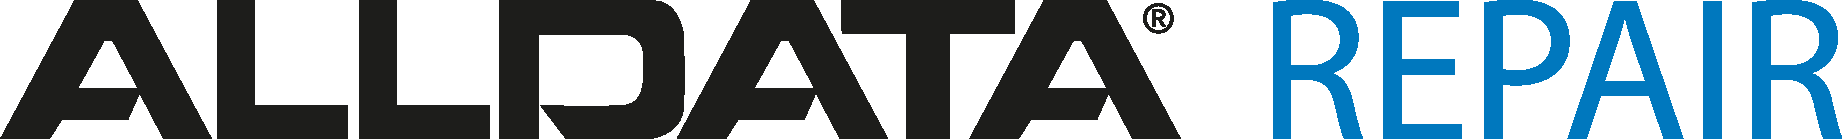 Alldata Repair Logo Vector